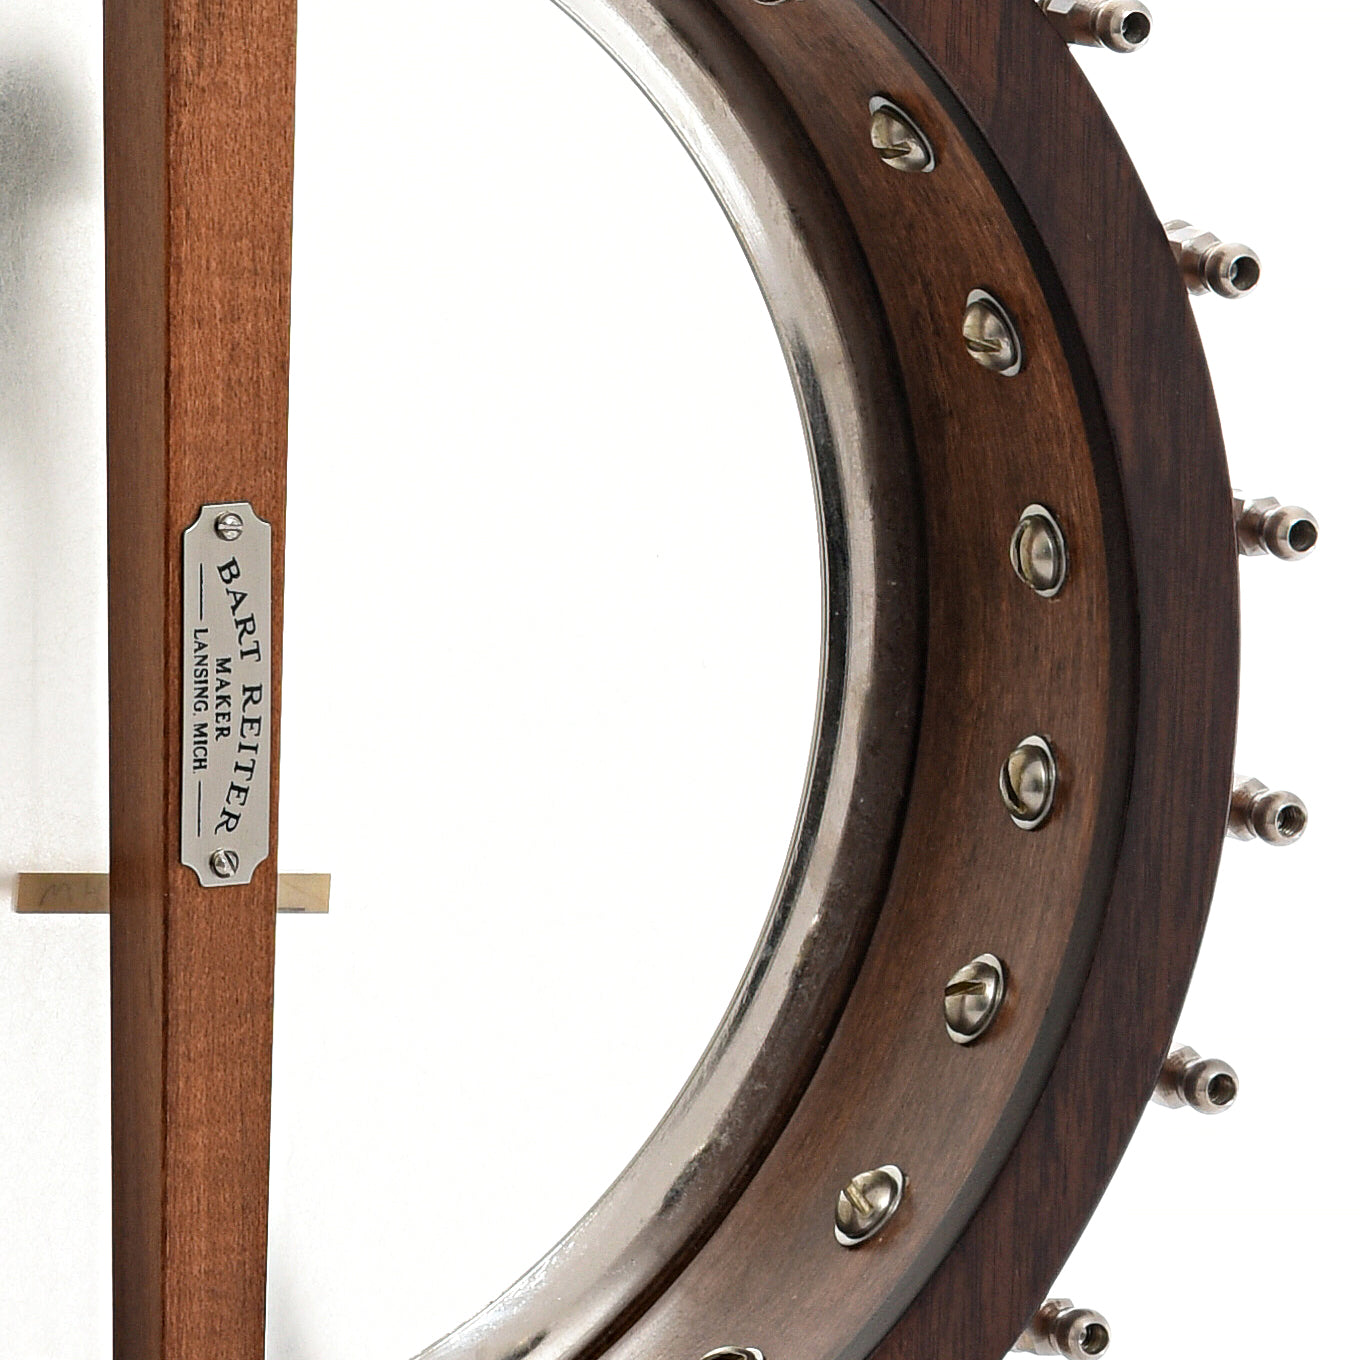 Inside rim of Bart Reiter Bacophone Open Back Banjo (2009)